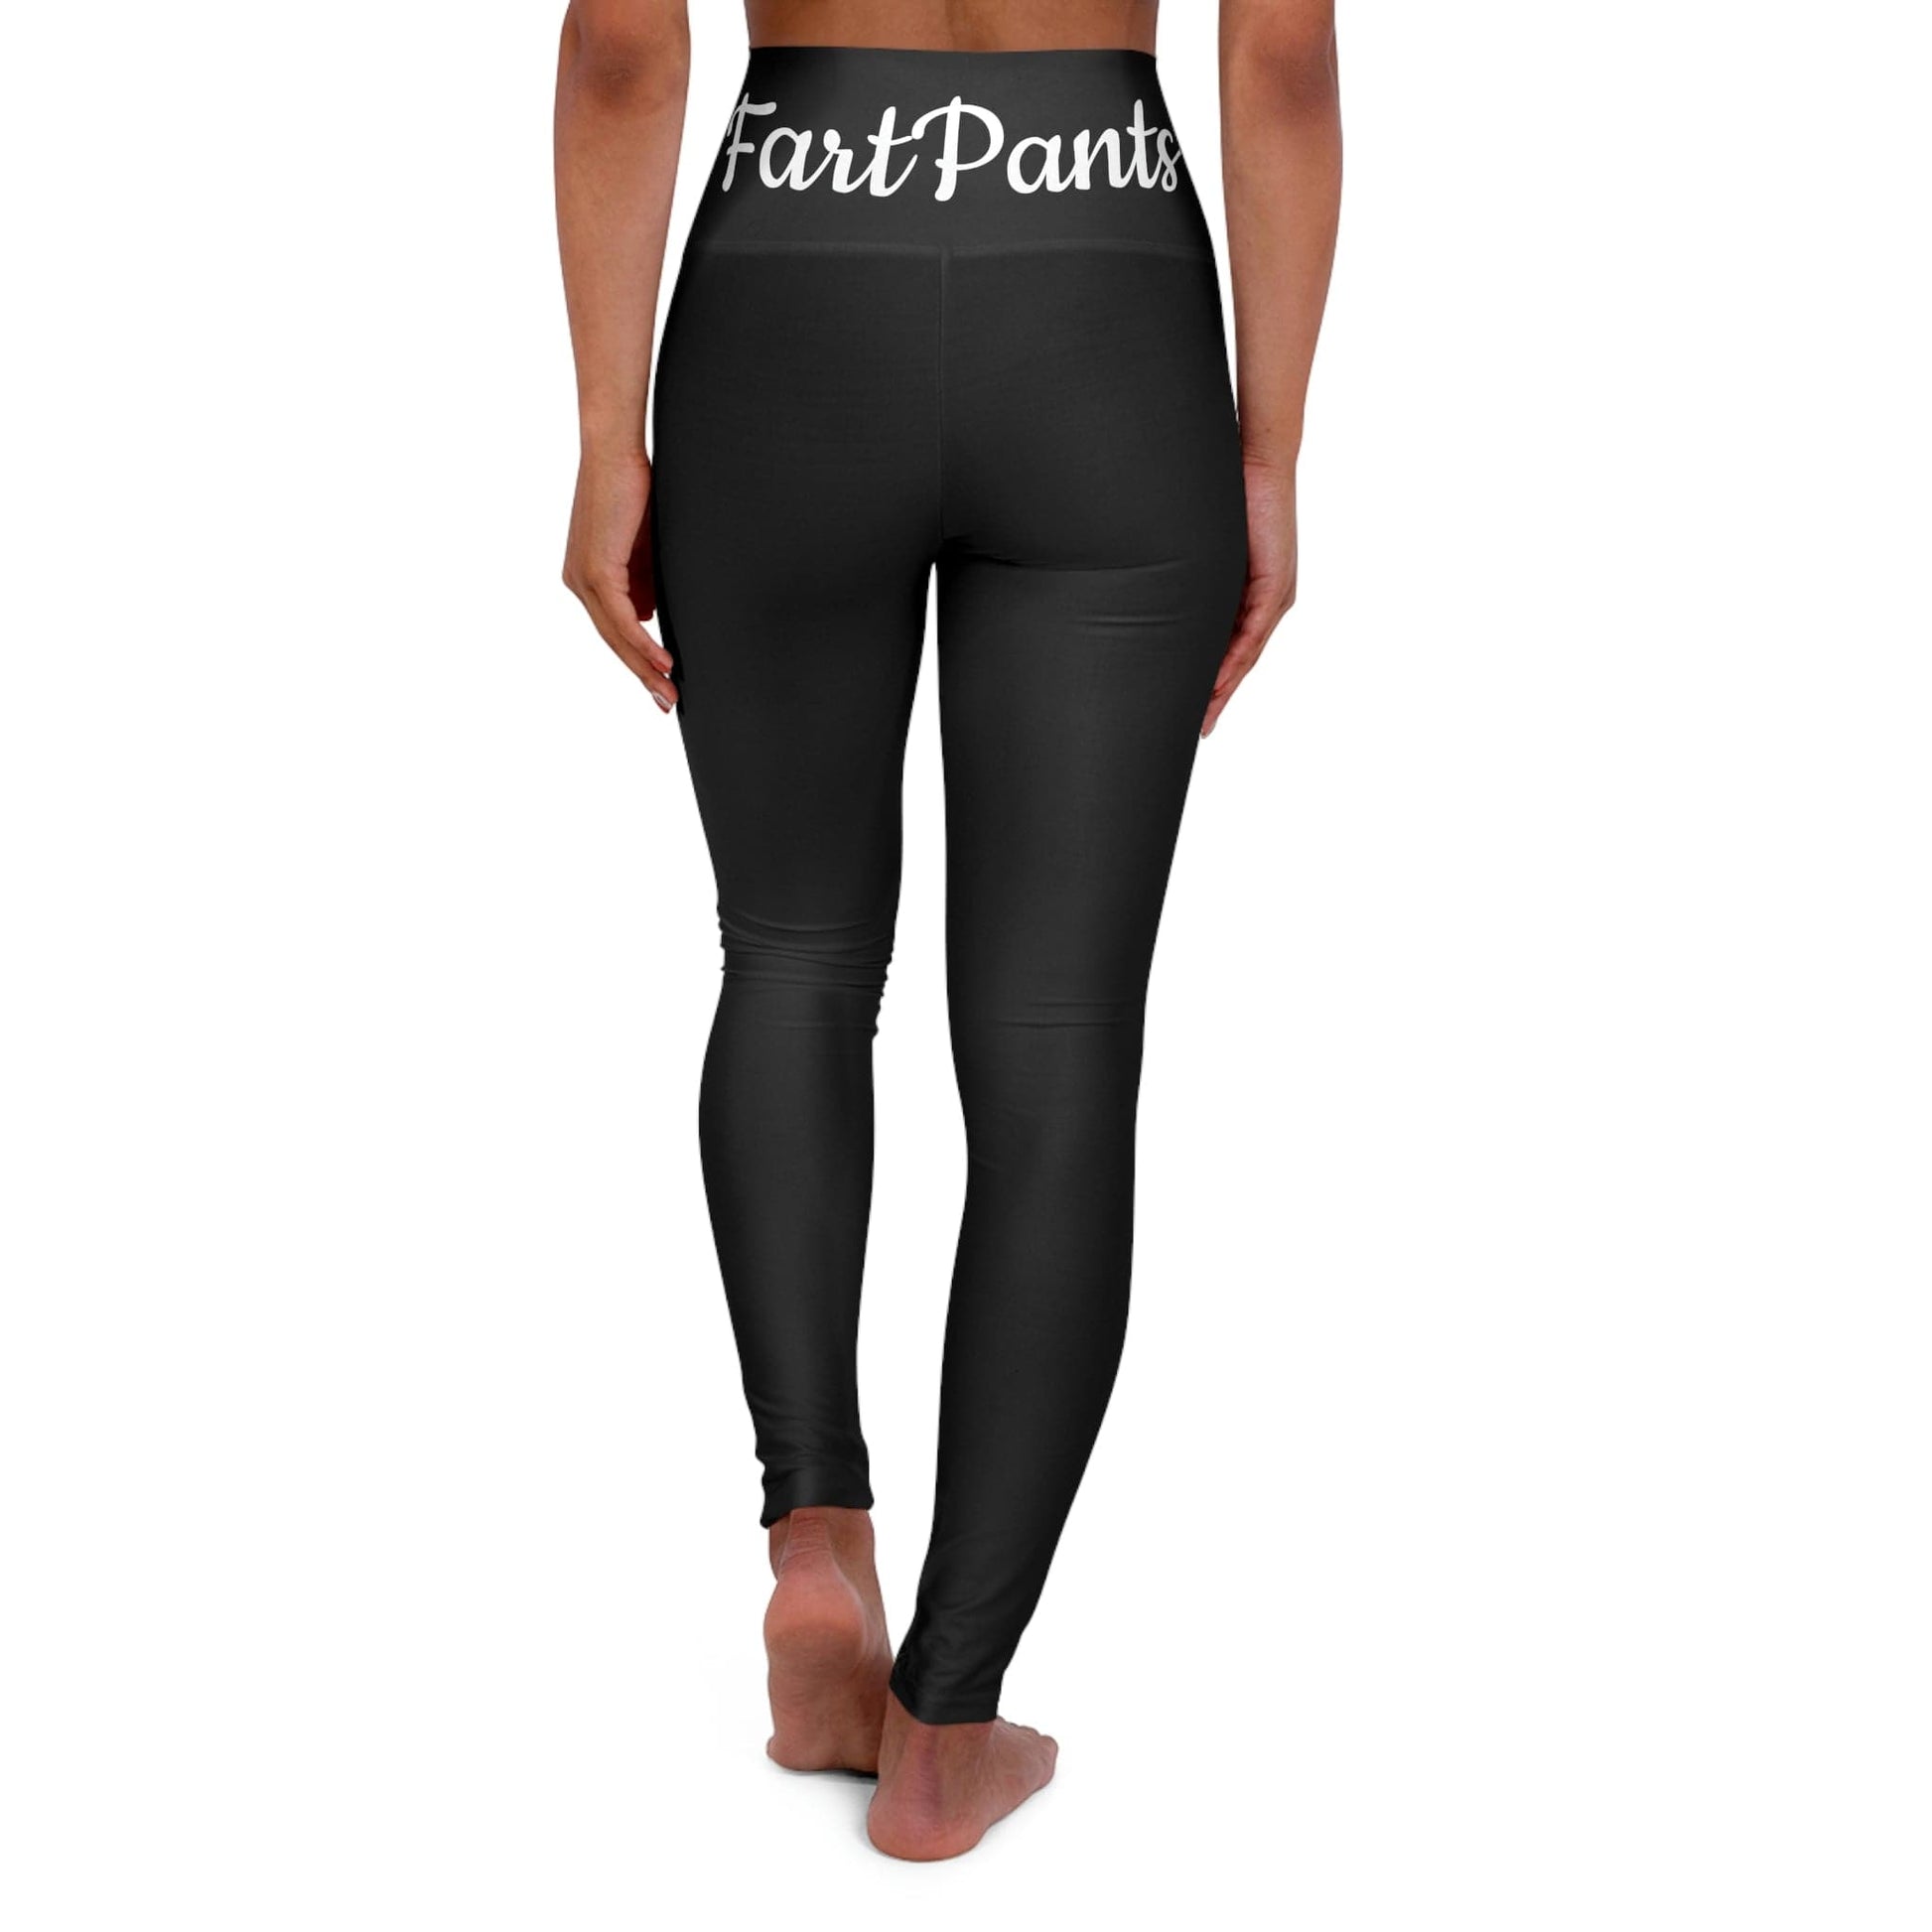 FartPants High Waisted Yoga Leggings - Black Yoga Workout Pants - Comf